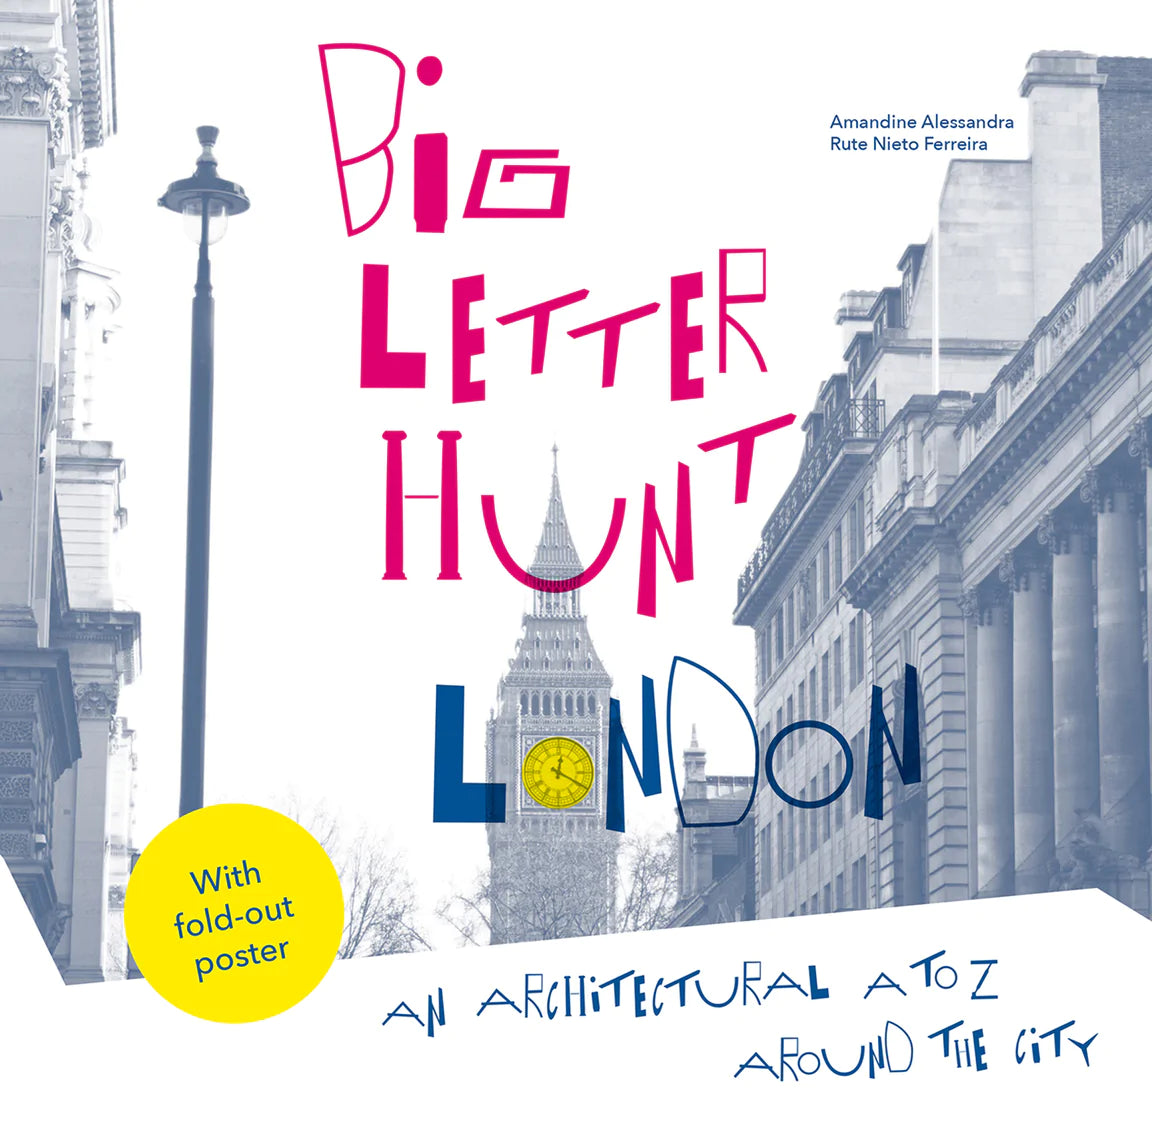 The Big Letter Hunt: London